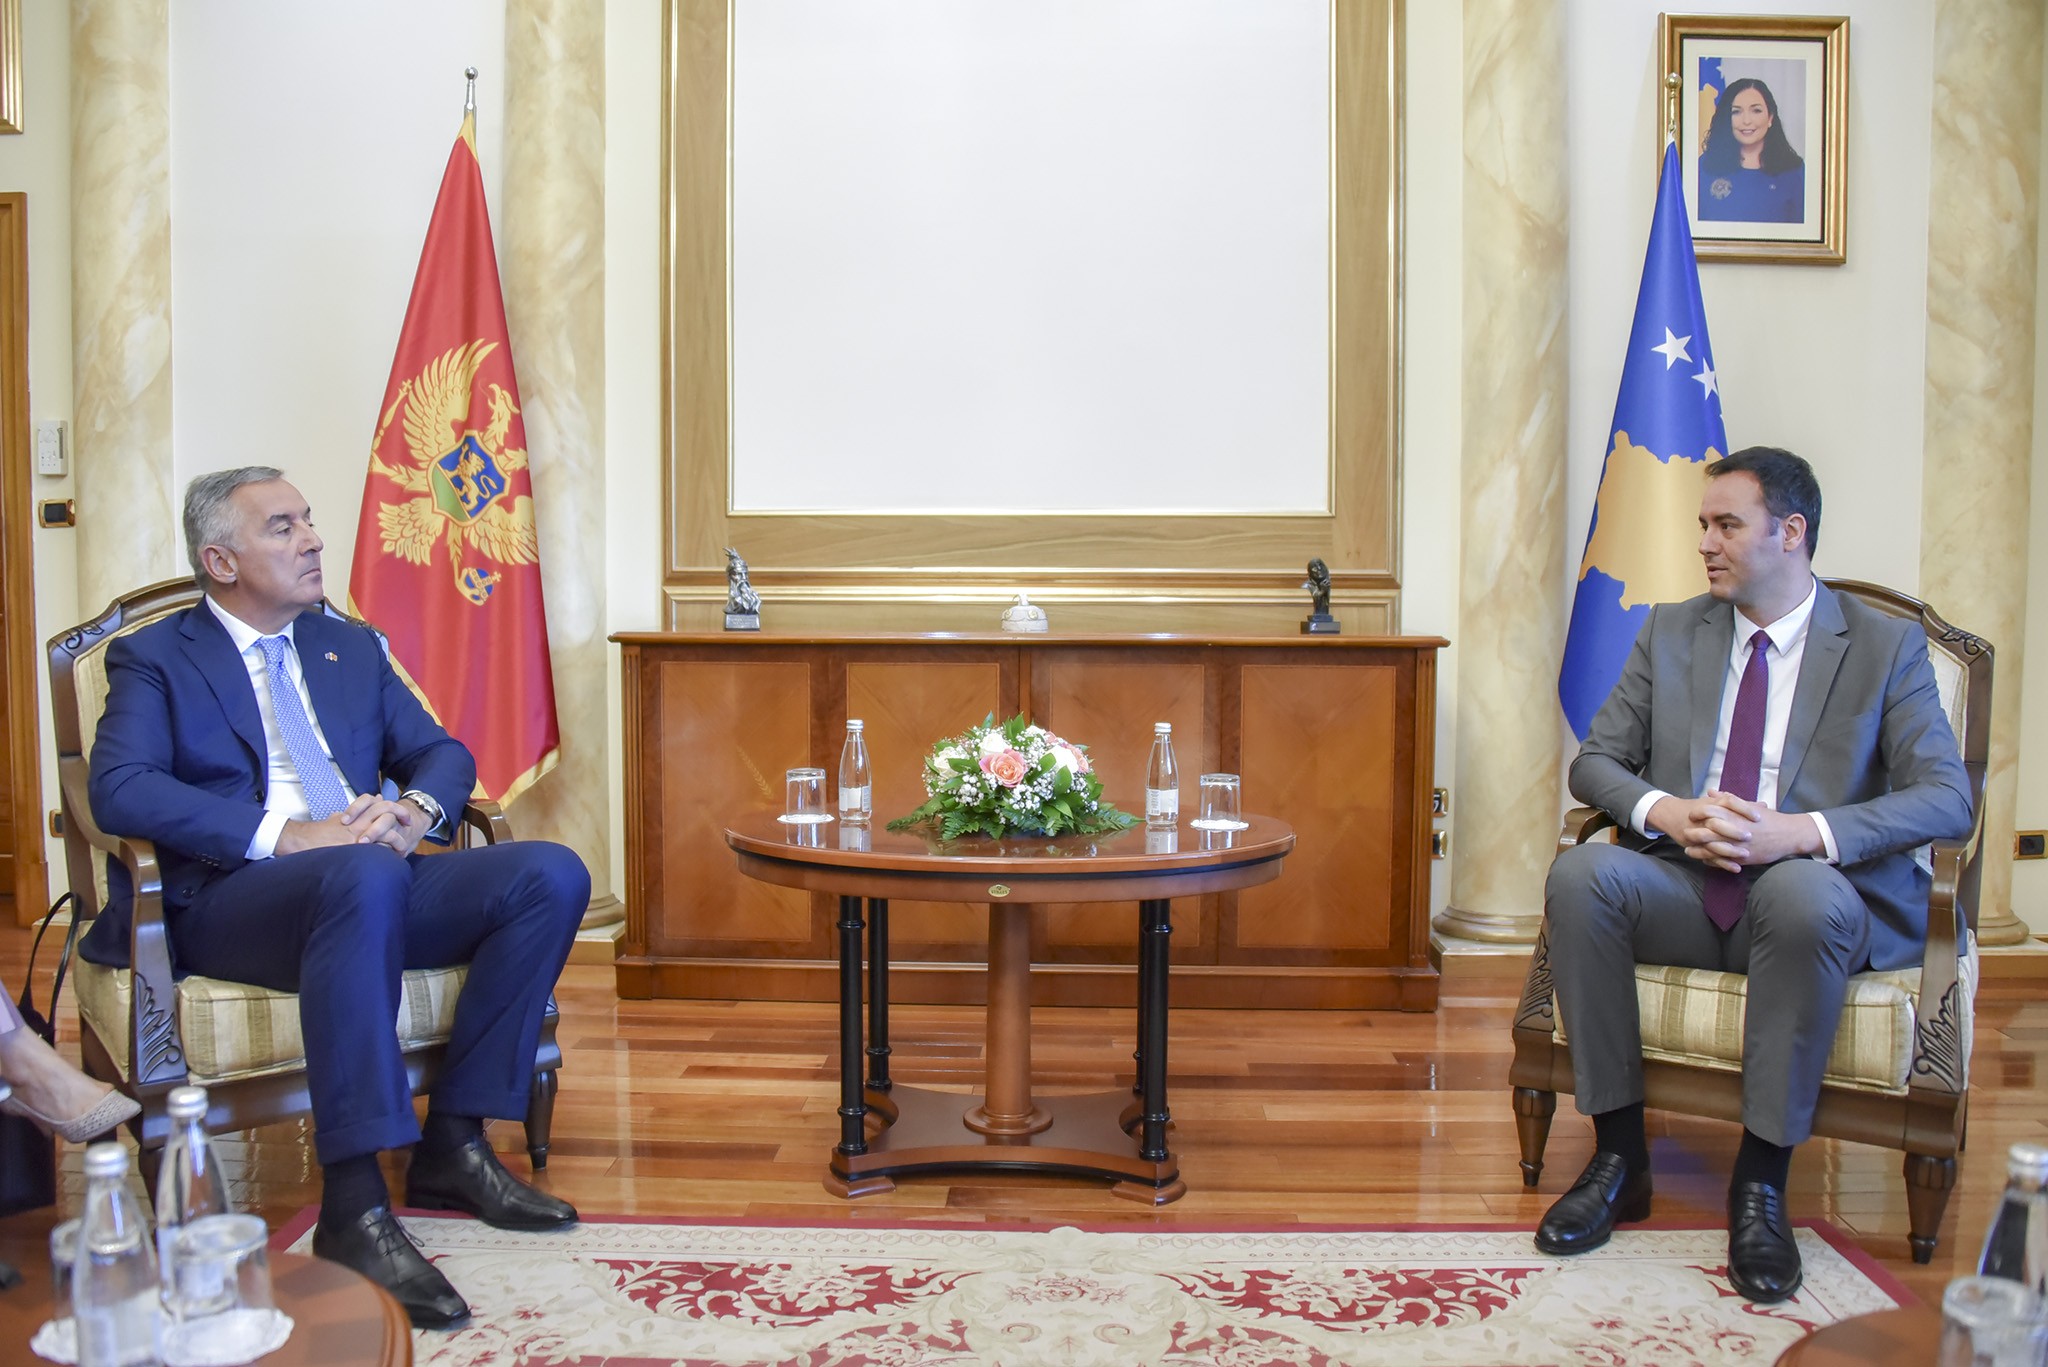 Kryetari Glauk Konjufca priti në takim presidentin e Malit të Zi, Milo Gjukanoviq